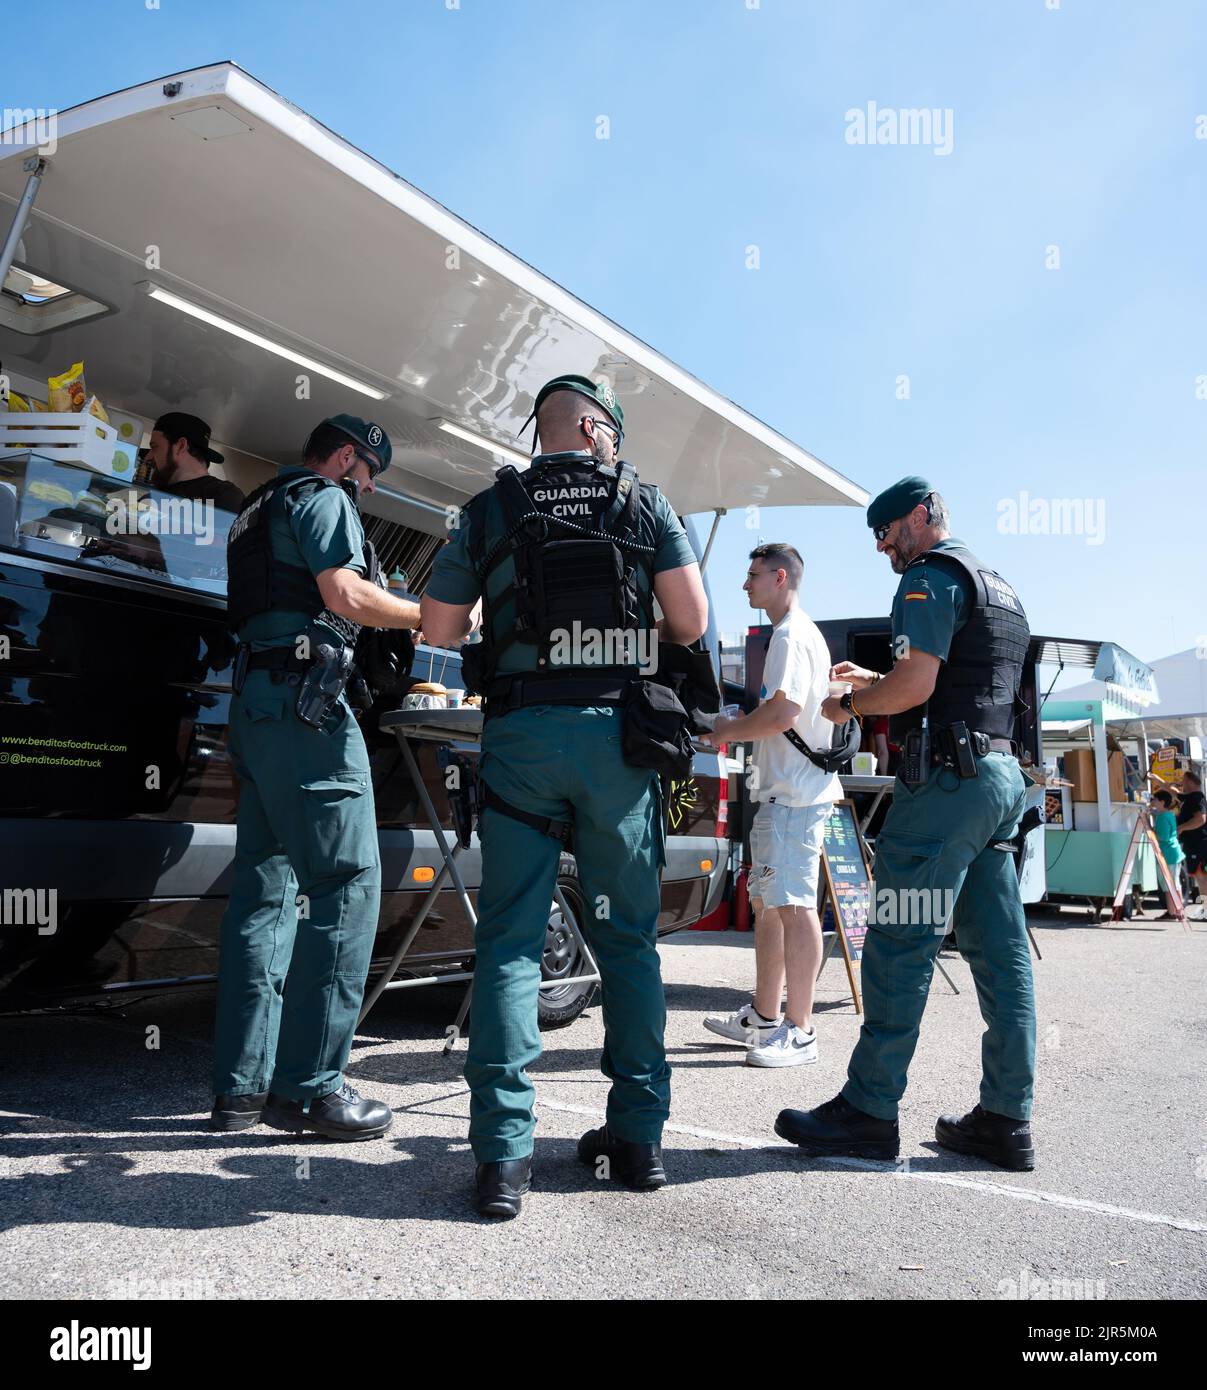 La Garde civile espagnole mangeant à partir d'un camion alimentaire par une journée ensoleillée Banque D'Images